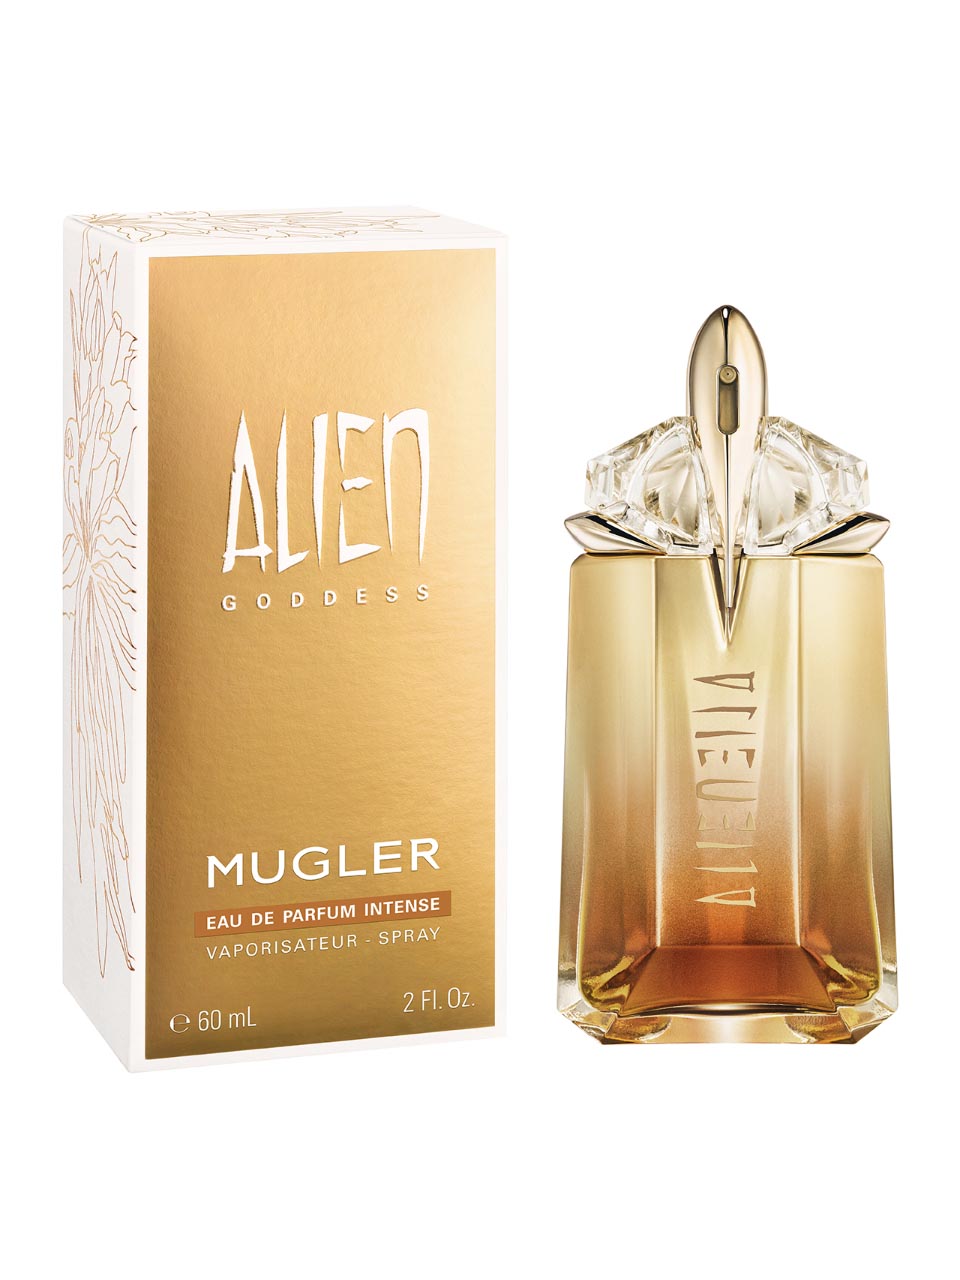 Mugler Alien Goddess Eau de Parfum Intense 60 ml null - onesize - 1